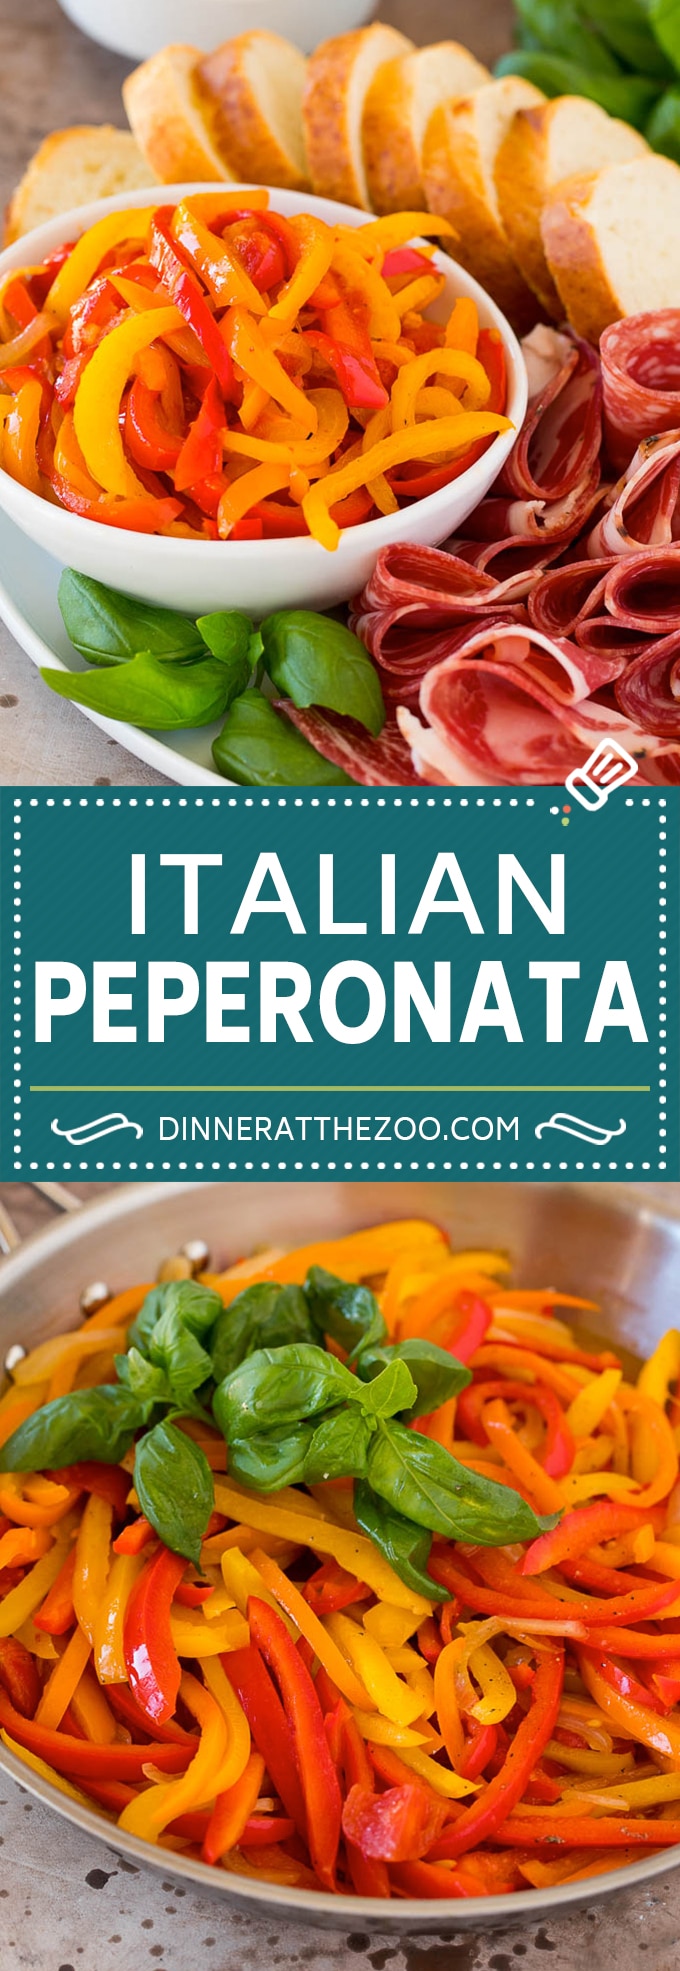 Esta peperonata es una receta clásica italiana de pimientos, cebollas y tomates cocidos.